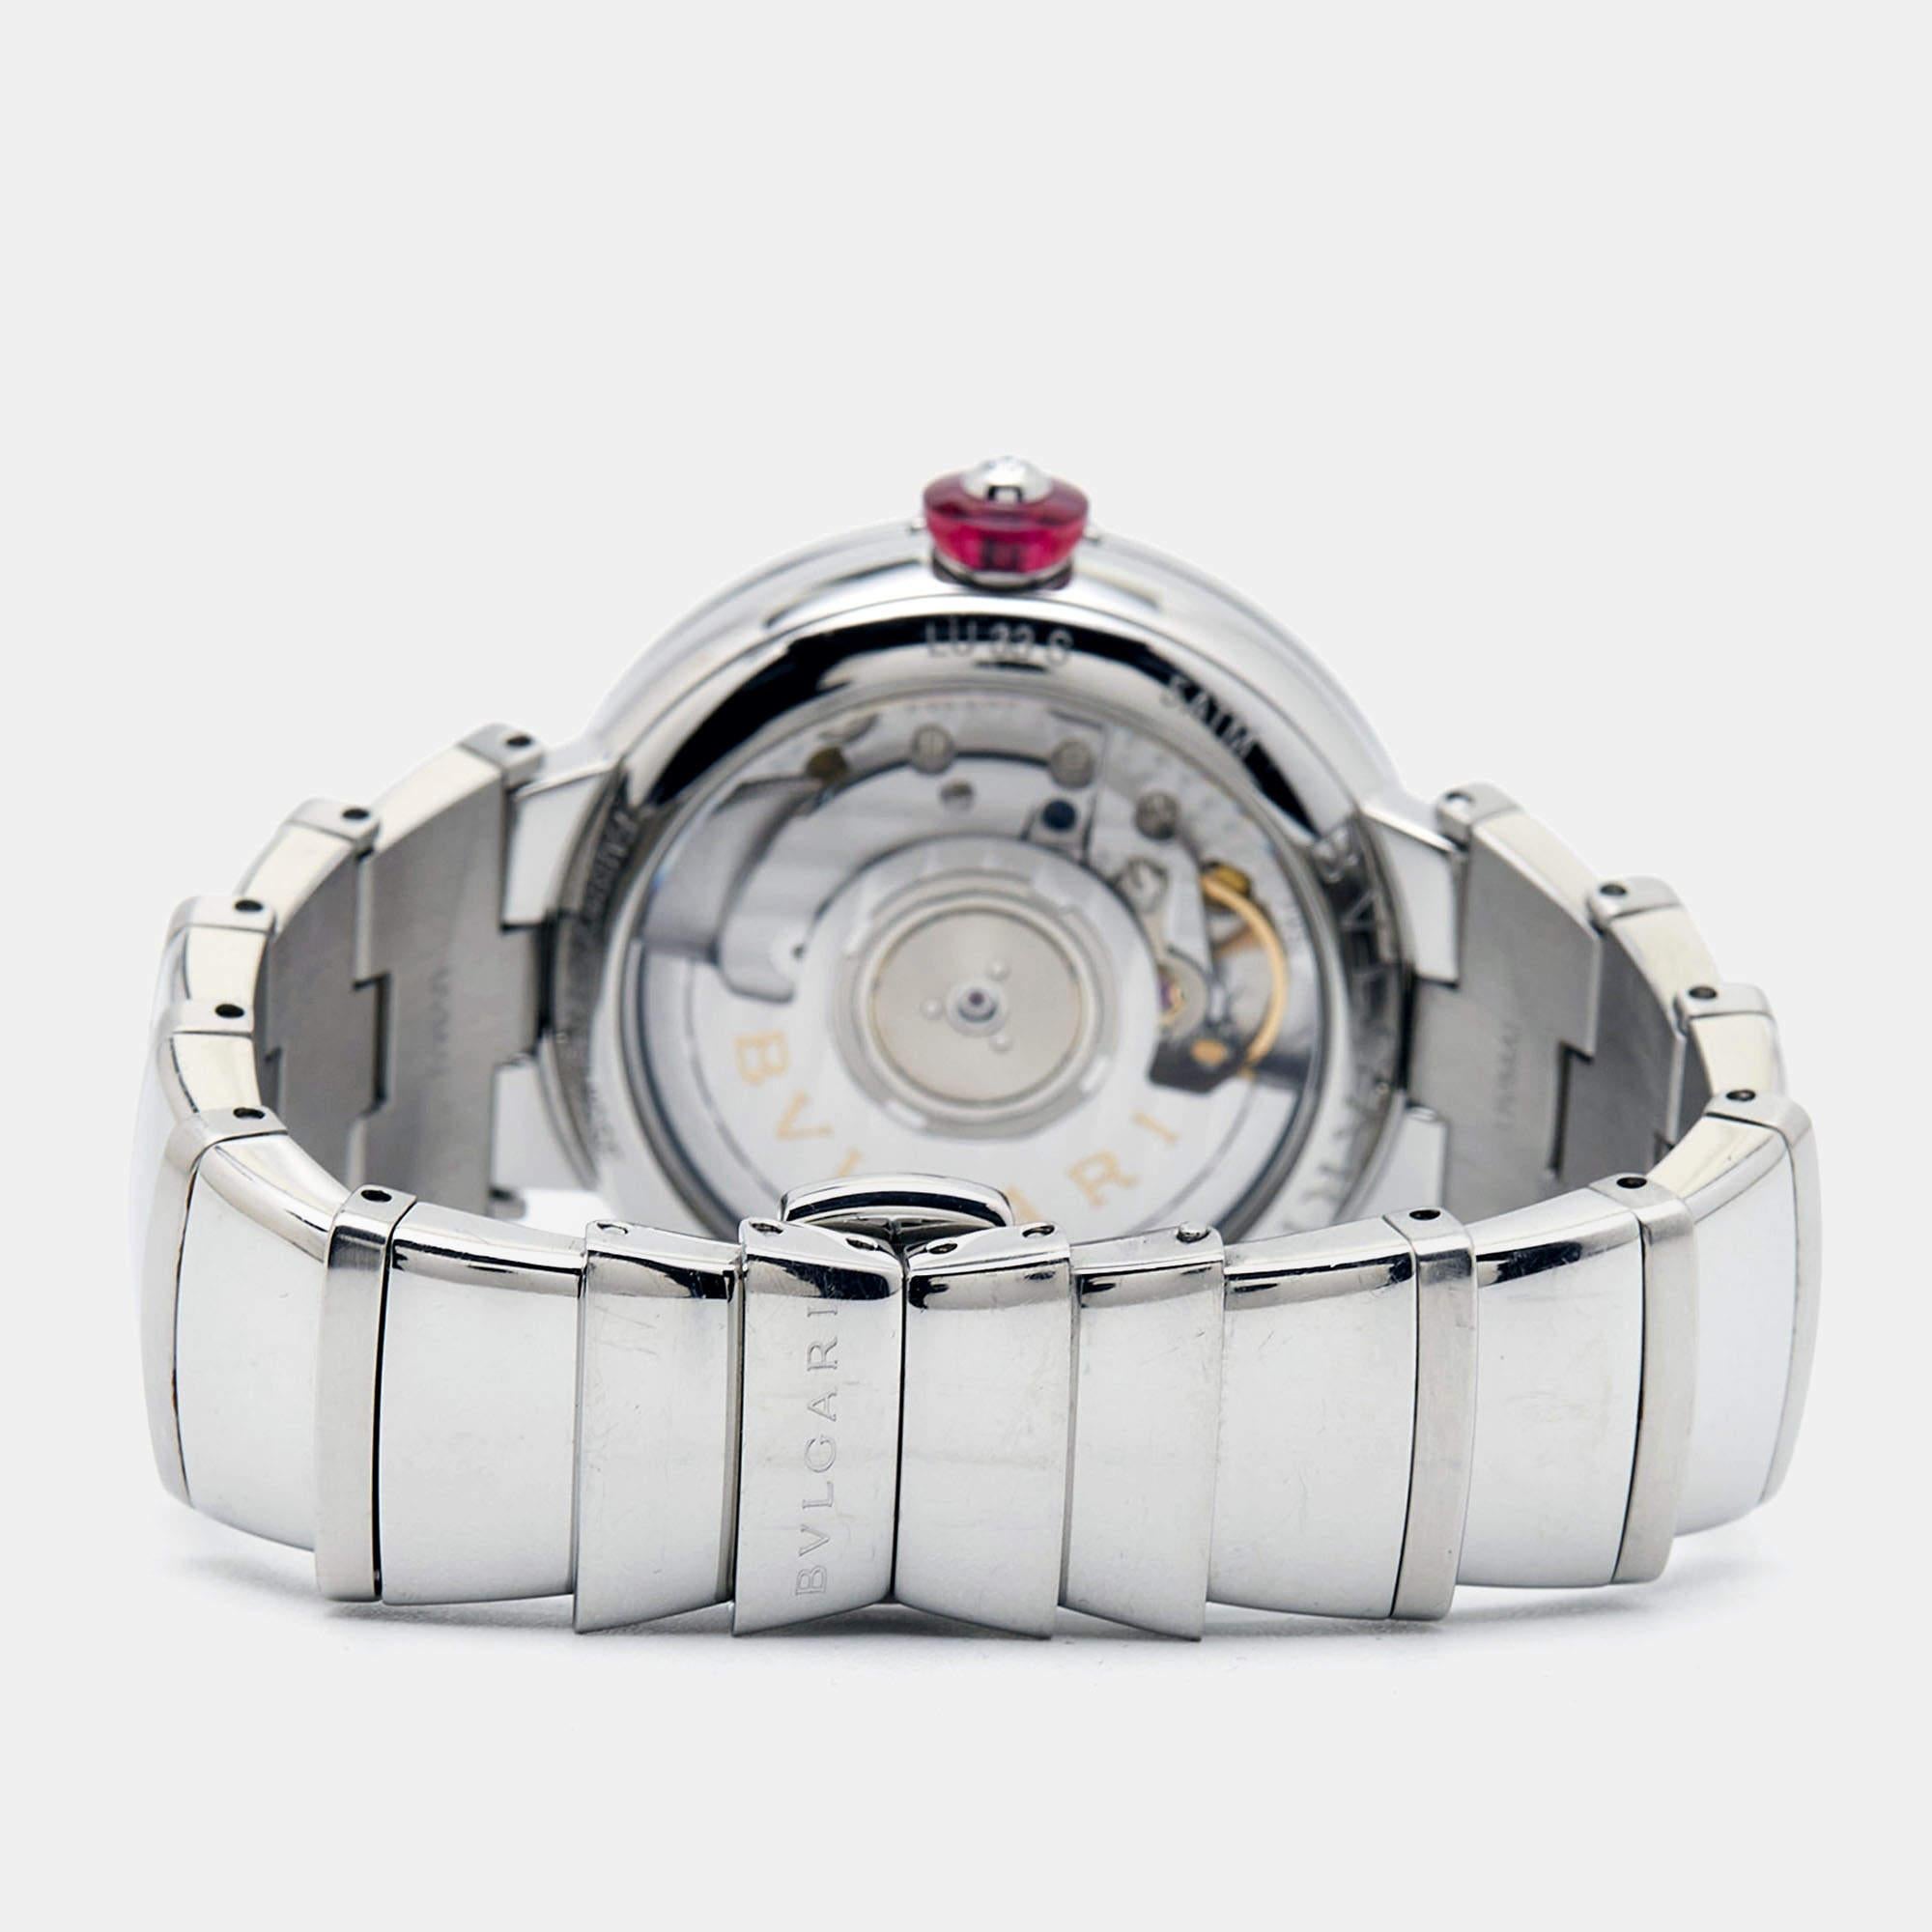 La collection de montres de Bvlgari est adaptée à la vie de tous les jours et aux jours spéciaux où vous devez vous habiller, ce qui rend les créations de la marque polyvalentes et vaut l'argent que vous dépensez. Retrouvez le charme de Bvlgari avec